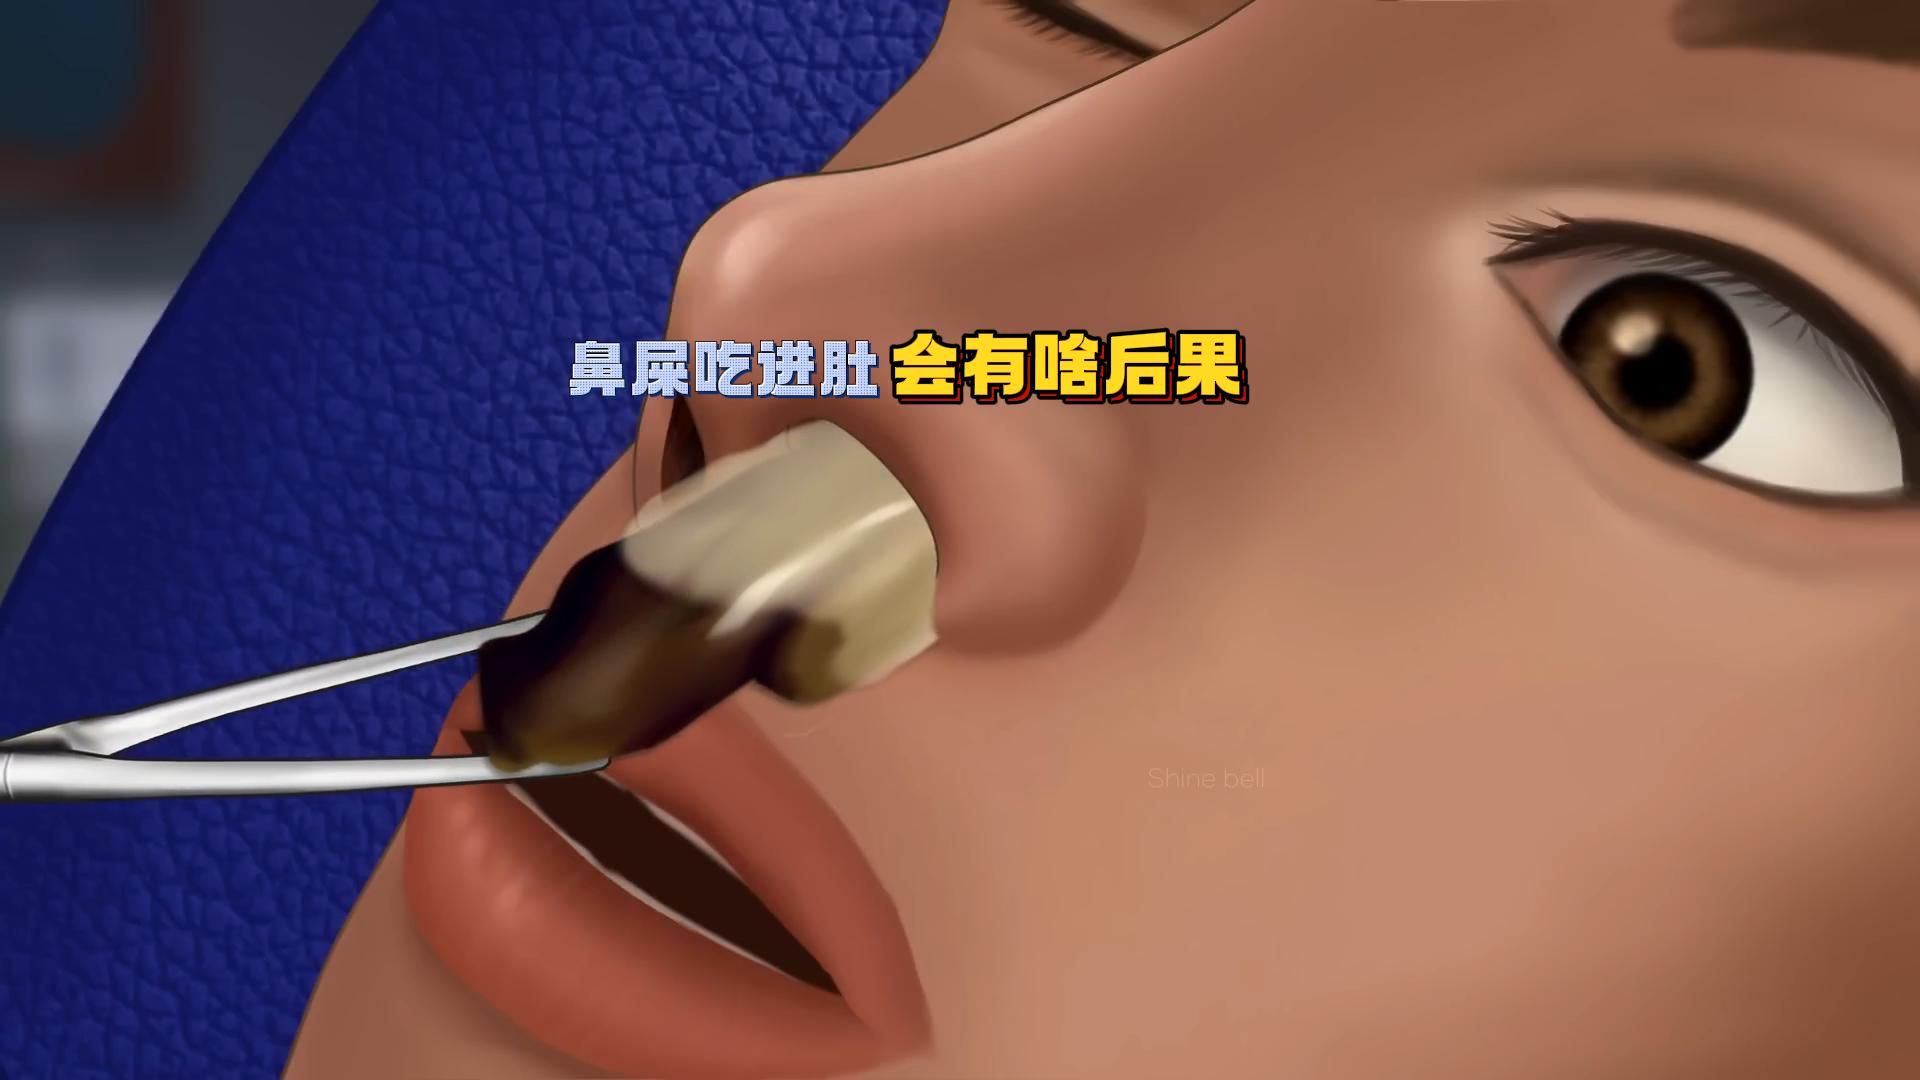 鼻屎吃到胃里会发生什么，经常挖鼻屎后果居然这么严重？